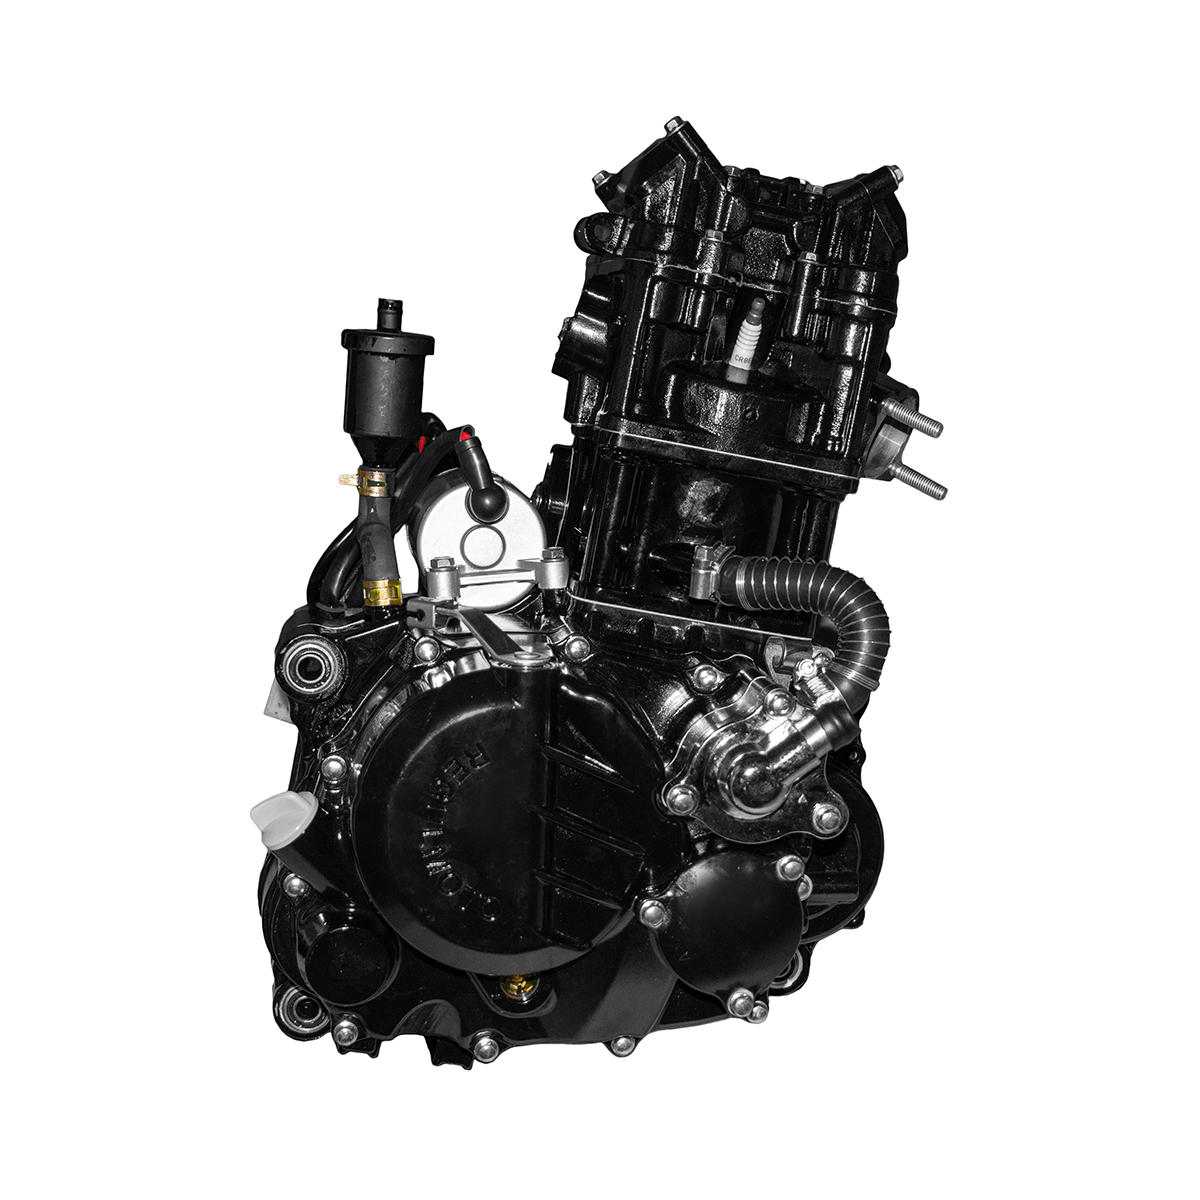 Двигатель ZS174MN-3 (CBS300) (74x65) 4-кл, КПП - 6, вод.охл., без рычага КИК